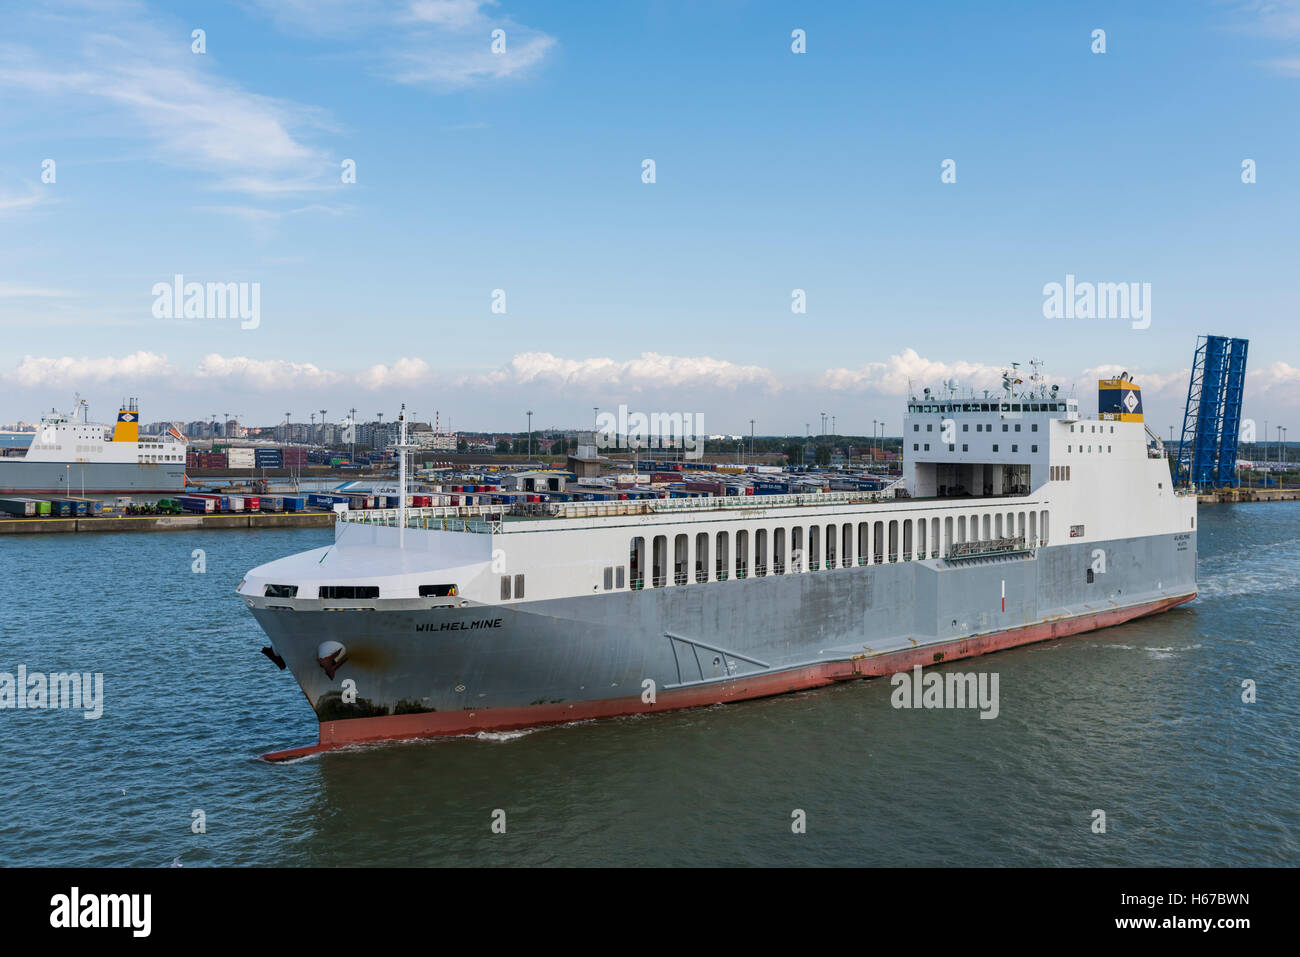 The 'Wilhelmine' leaving the port of Zeebrugge in Belgium. Stock Photo